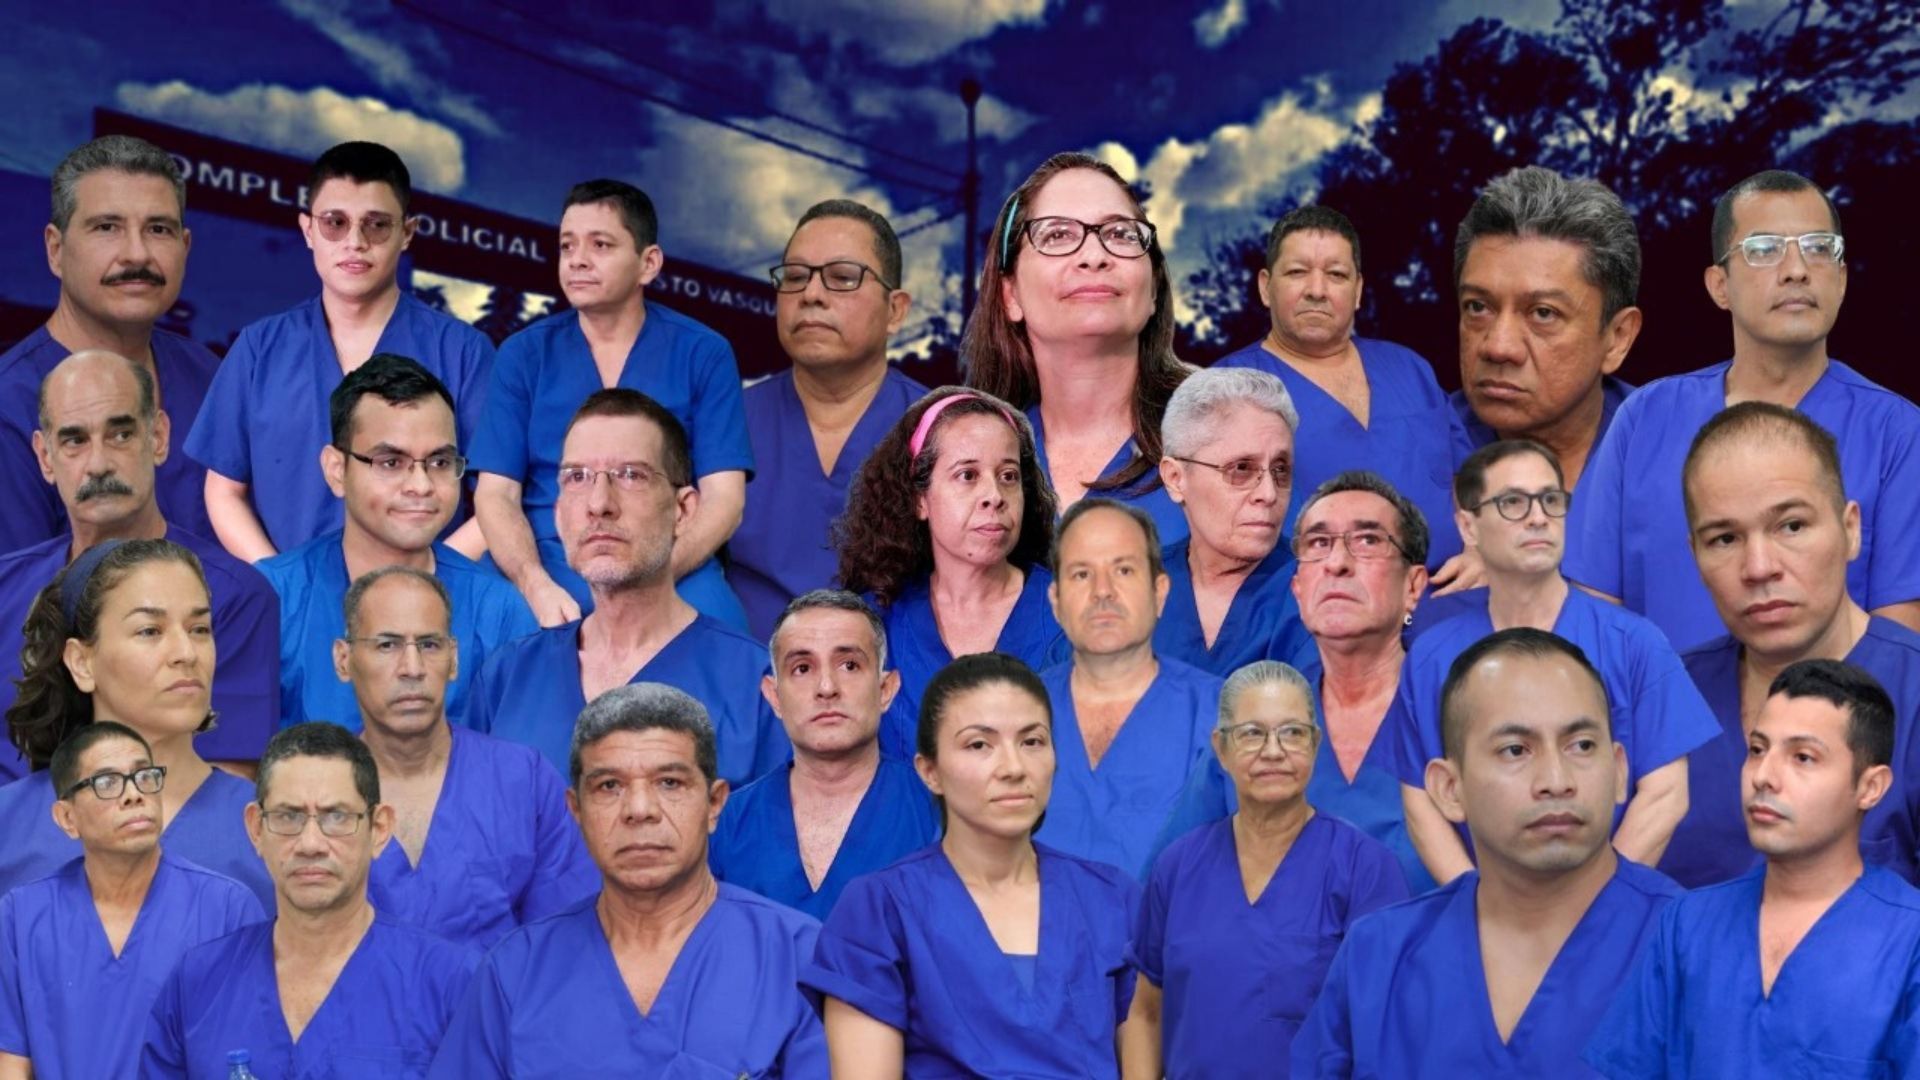 Las imágenes divulgadas por Ortega no reflejan las malas condiciones en las que permanecen los presos políticos, denuncian sus familiares